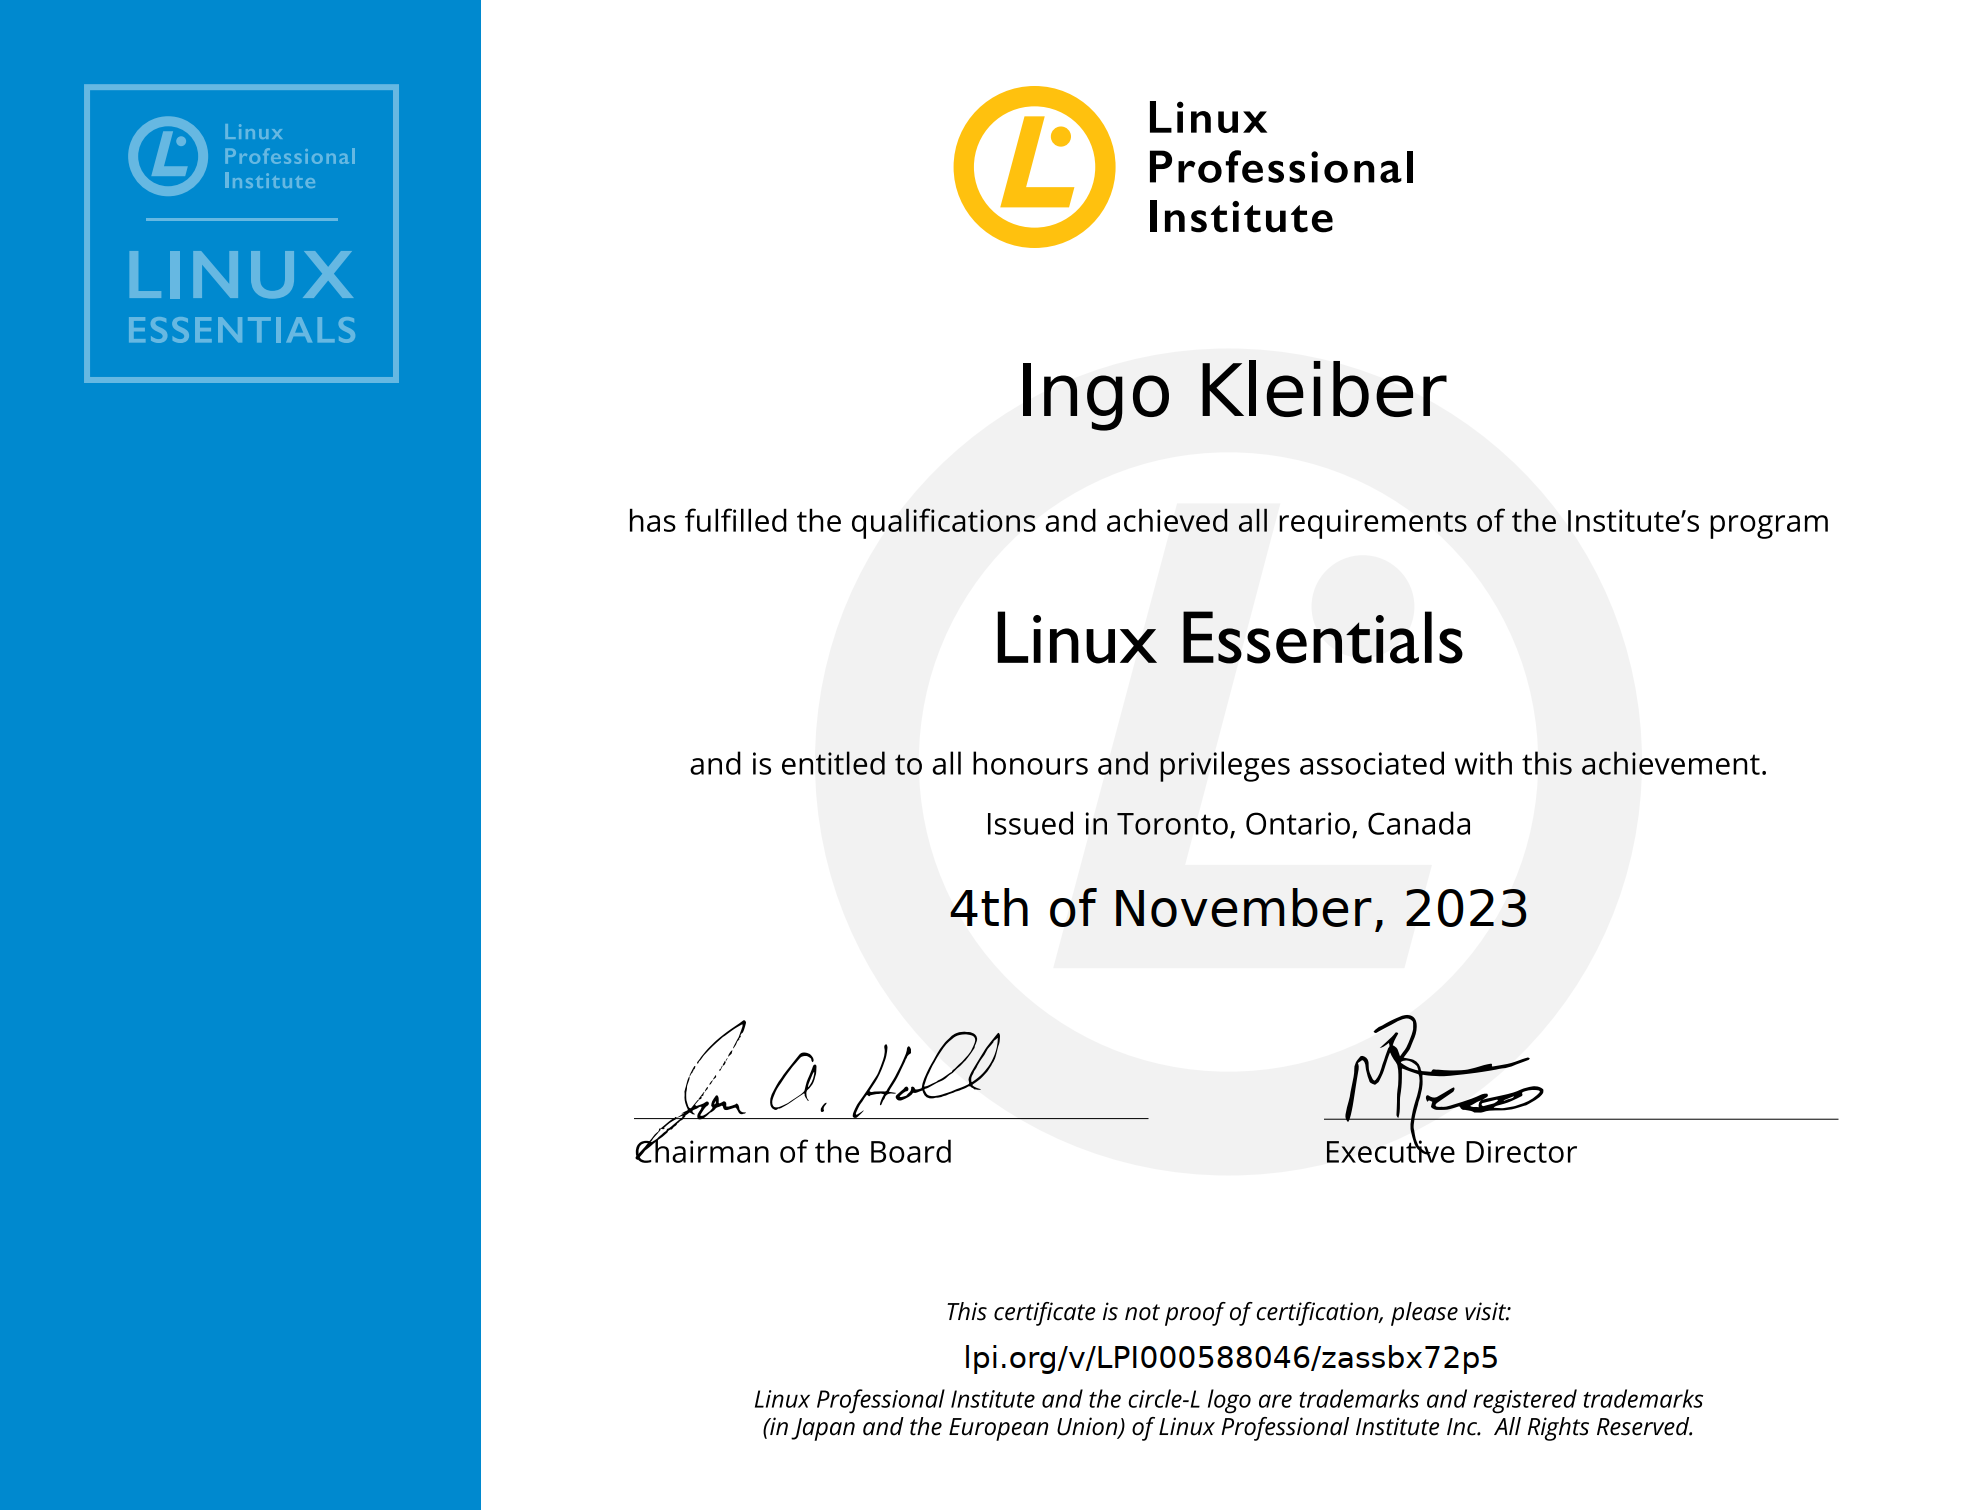 LPI Linux Essentials Certification Ingo Kleiber